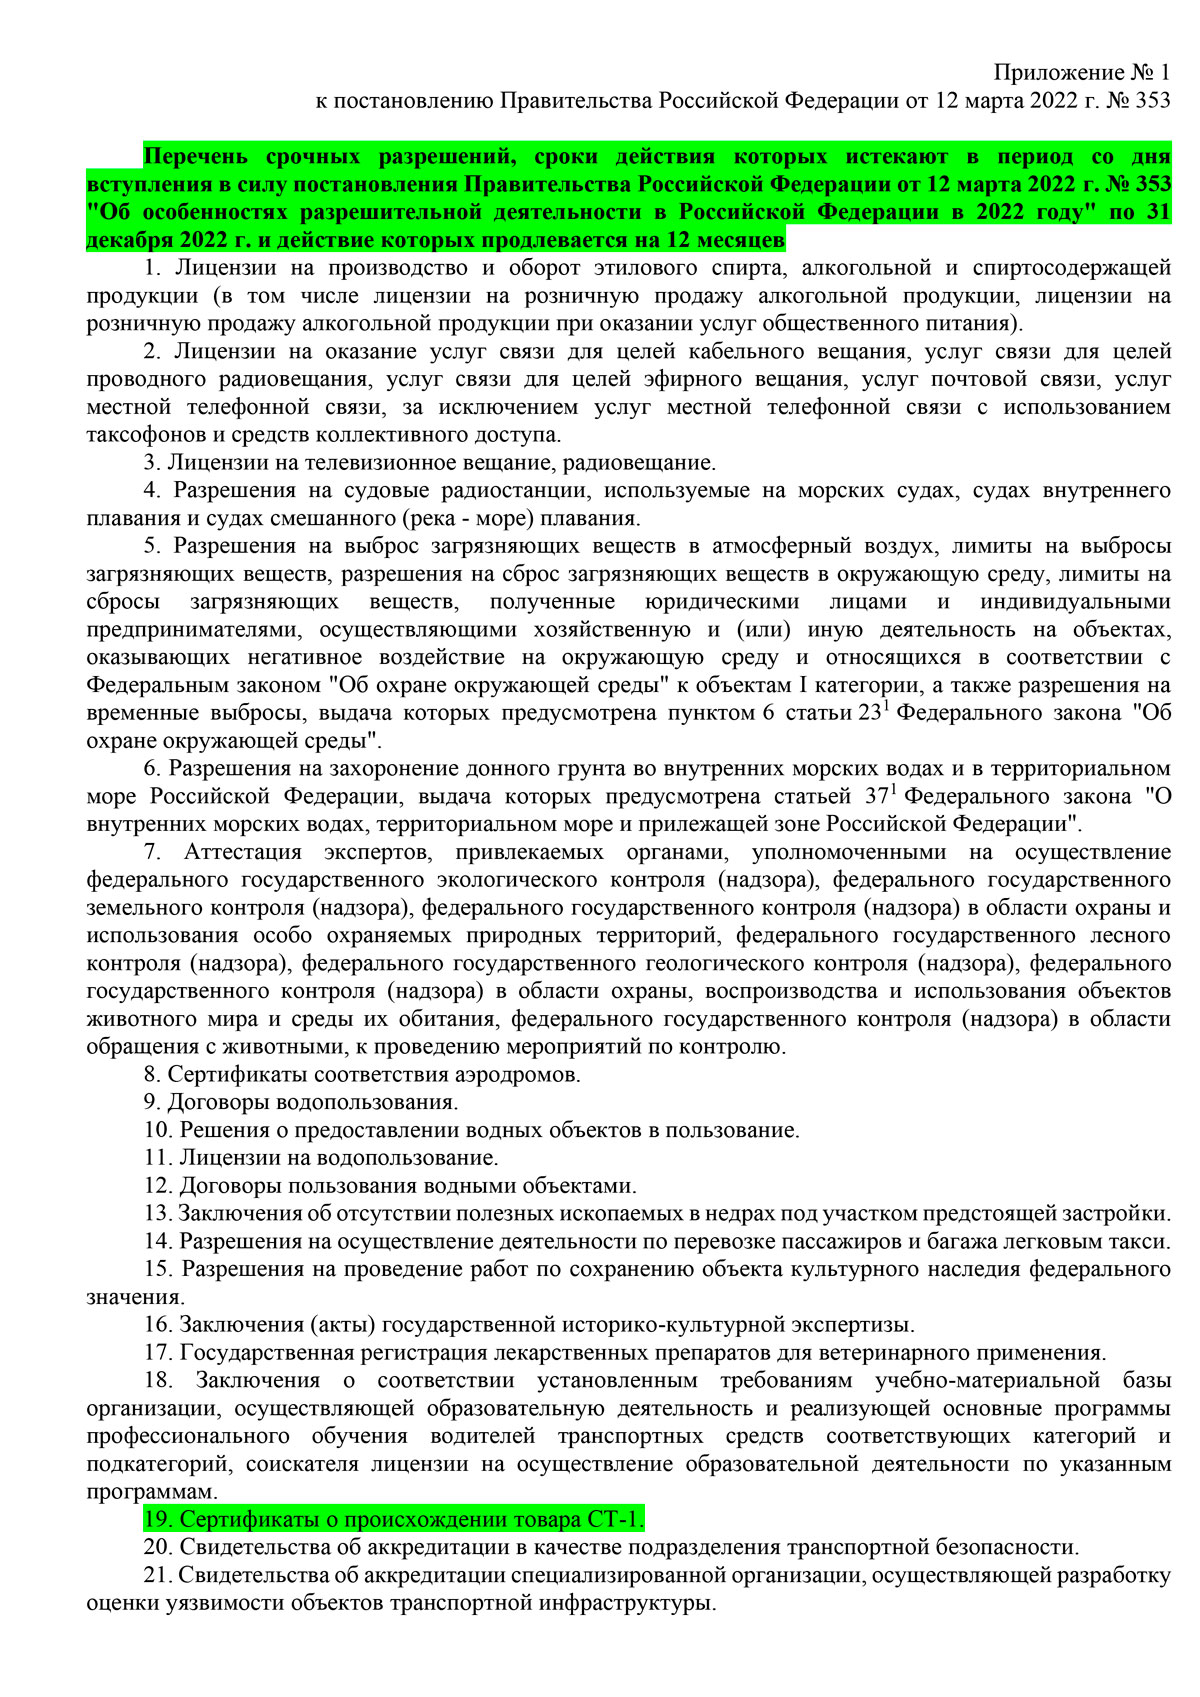 ПП от 12 марта 2022 г. № 353 Об особенностях разрешительной деятельности в РФ в 